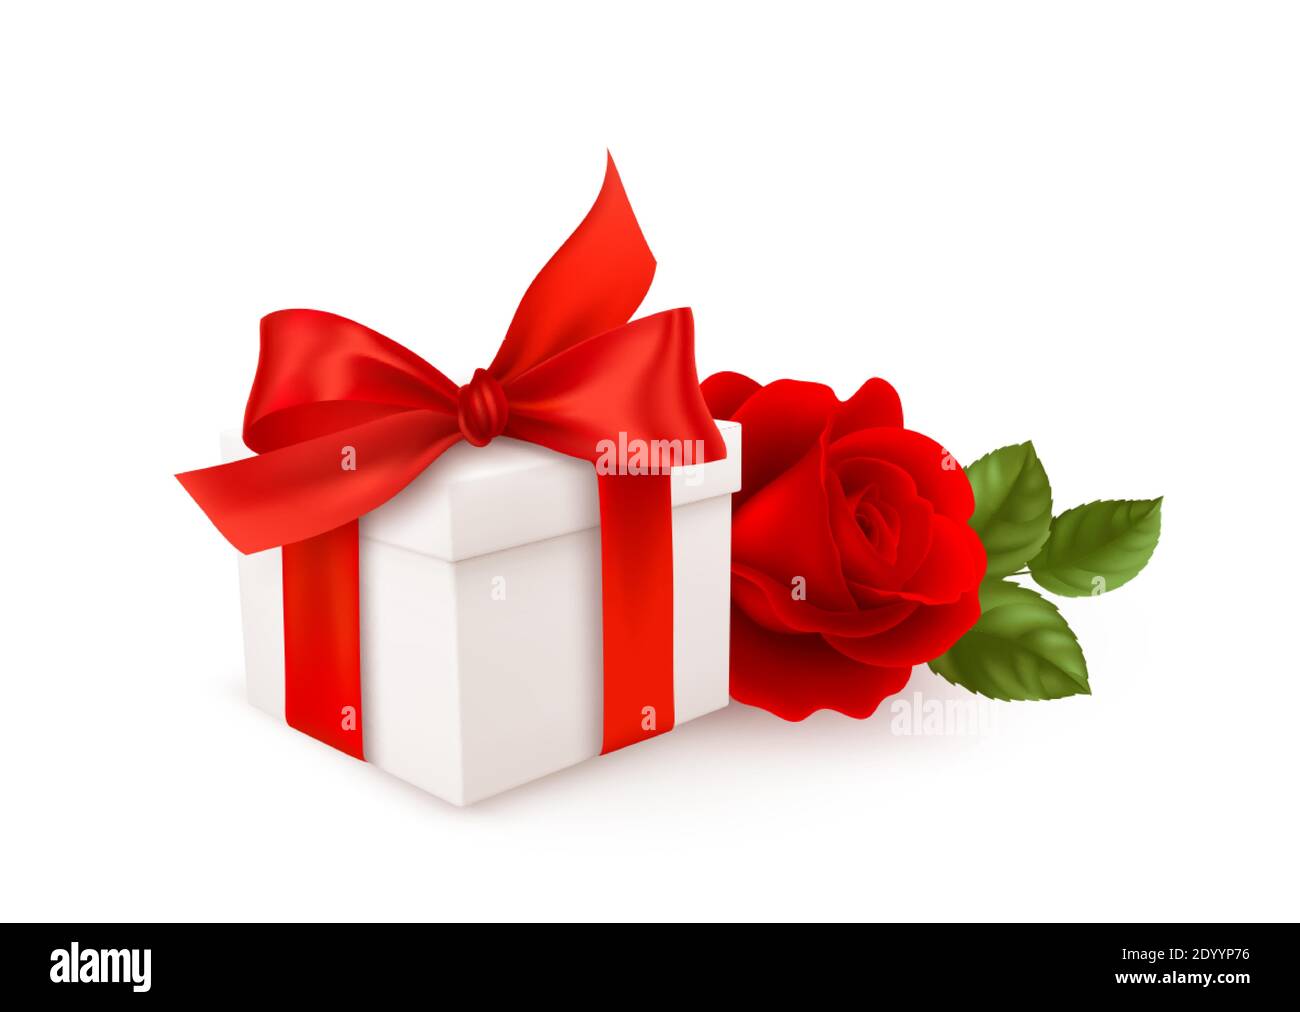 Boîte cadeau blanche réaliste avec ruban rouge et rose rouge isolée sur fond blanc. Élément de conception pour une bonne Saint Valentin. Illustration vectorielle Illustration de Vecteur